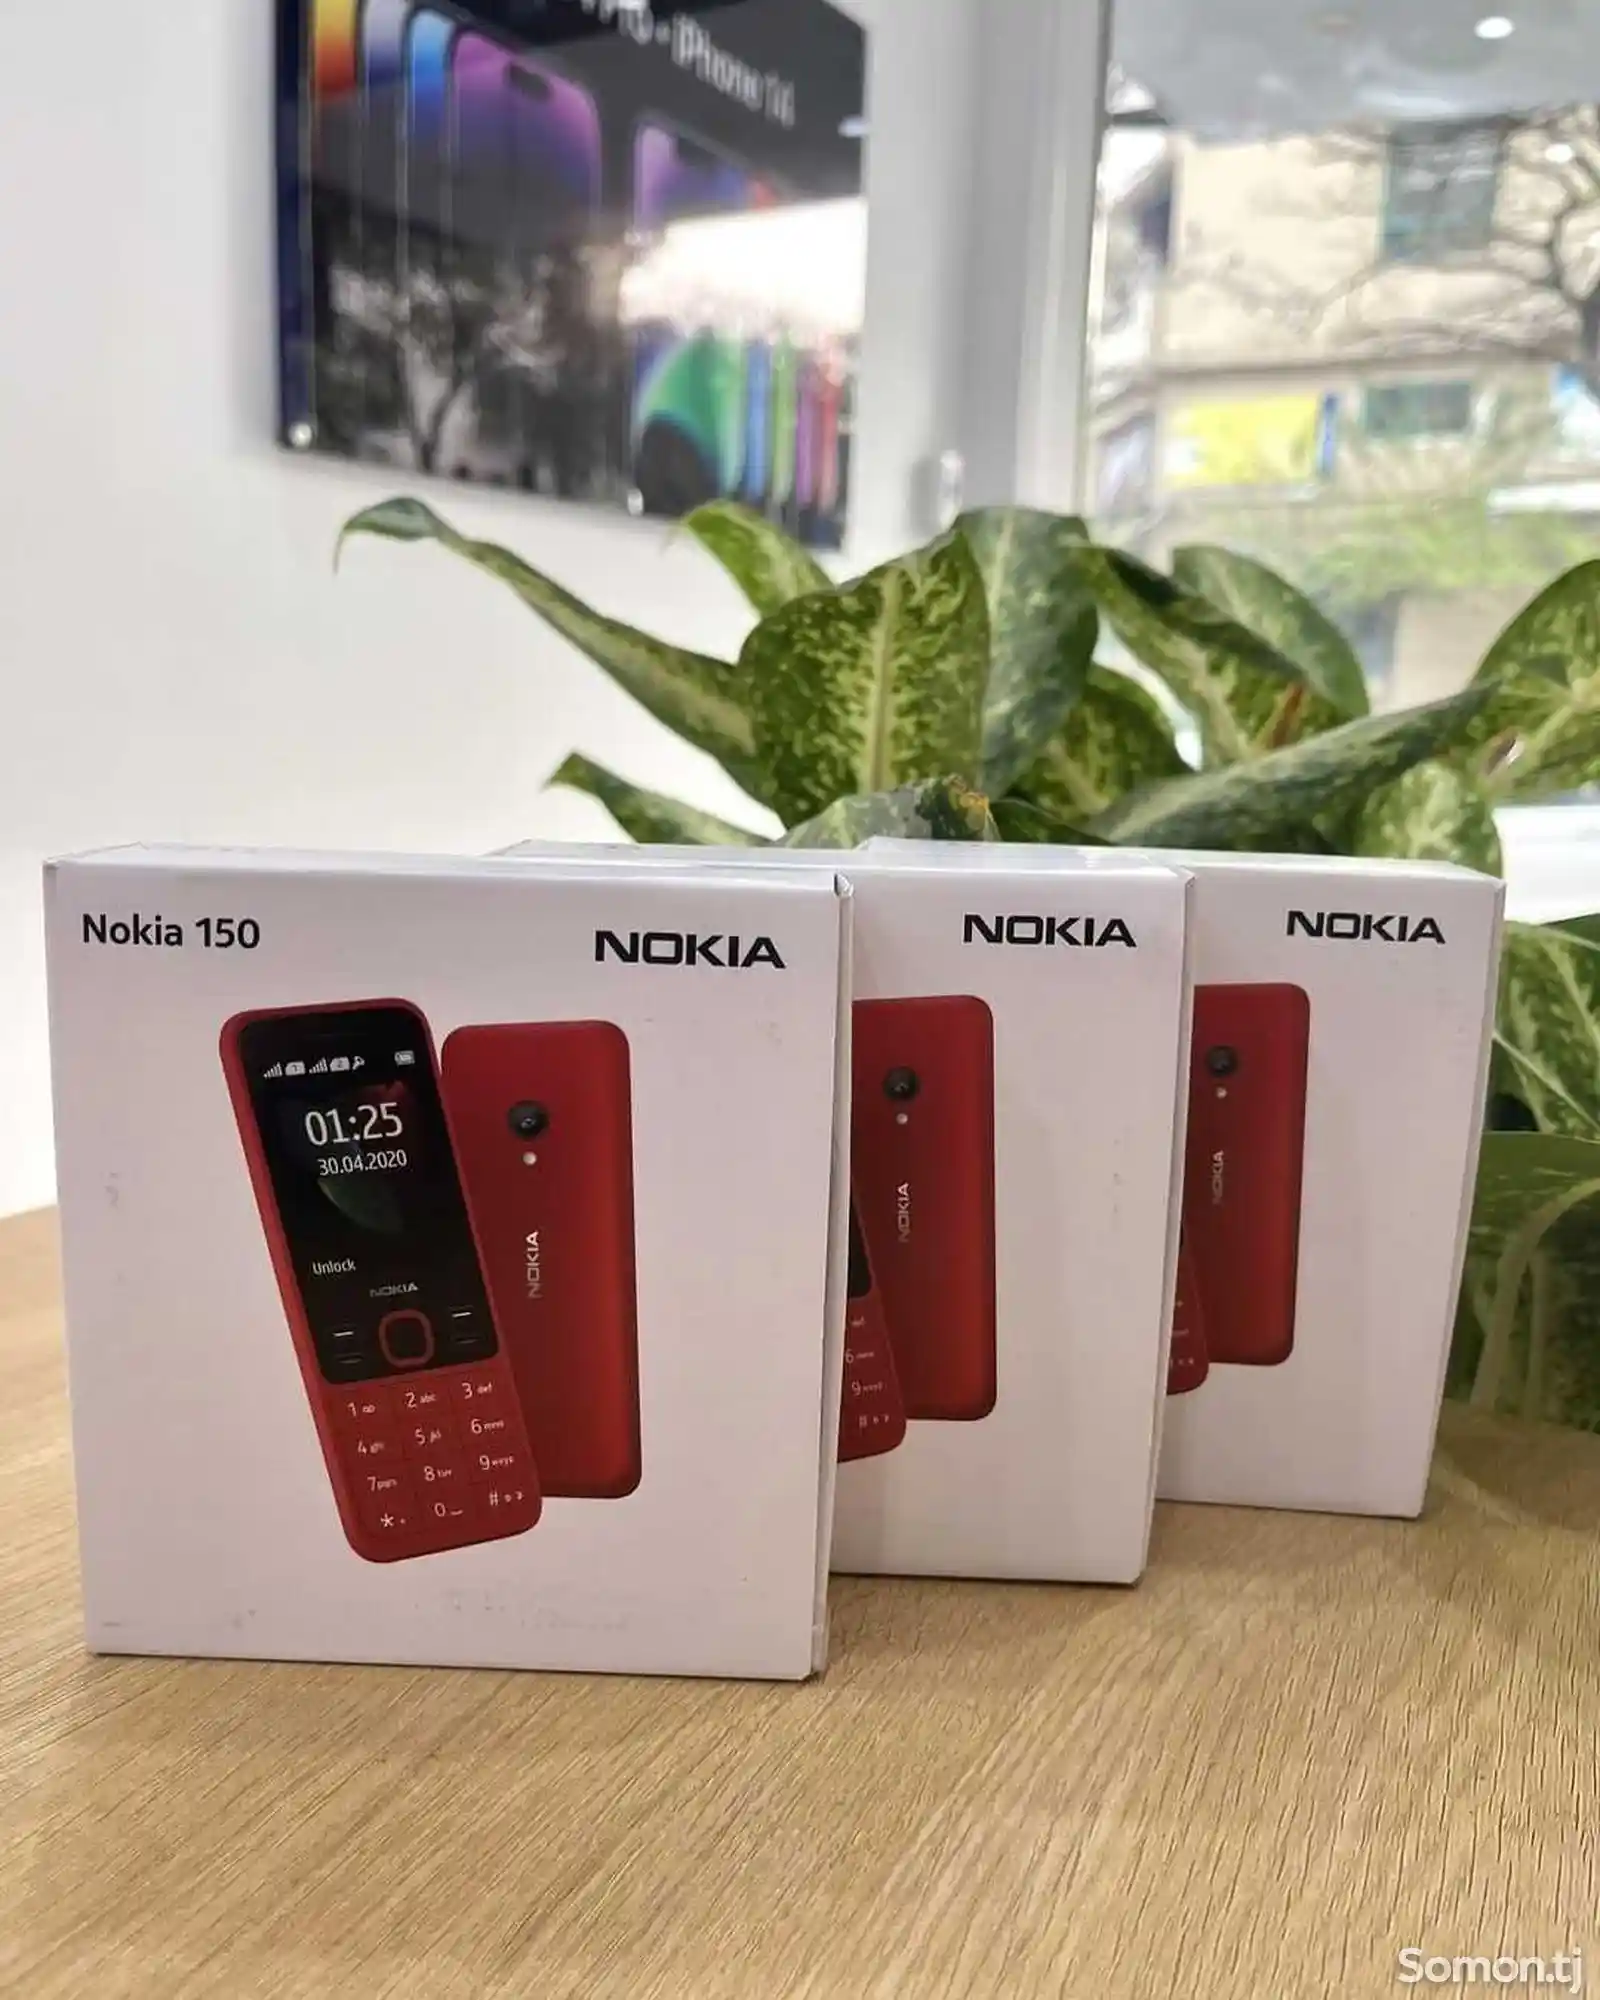 Nokia 8210-7